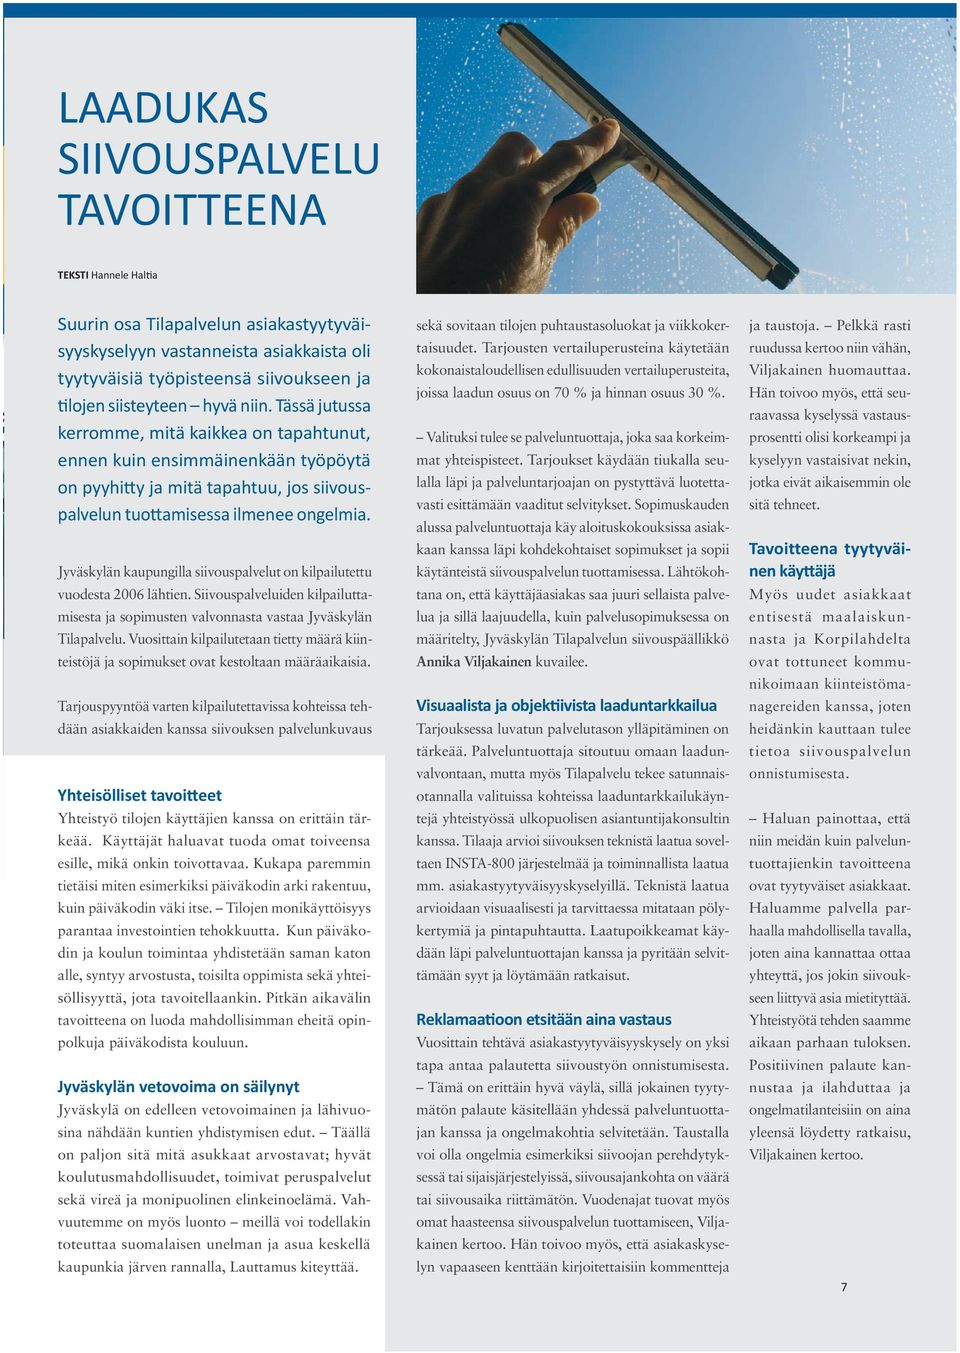 Jyväskylän kaupungilla siivouspalvelut on kilpailutettu vuodesta 2006 lähtien. Siivouspalveluiden kilpailuttamisesta ja sopimusten valvonnasta vastaa Jyväskylän Tilapalvelu.